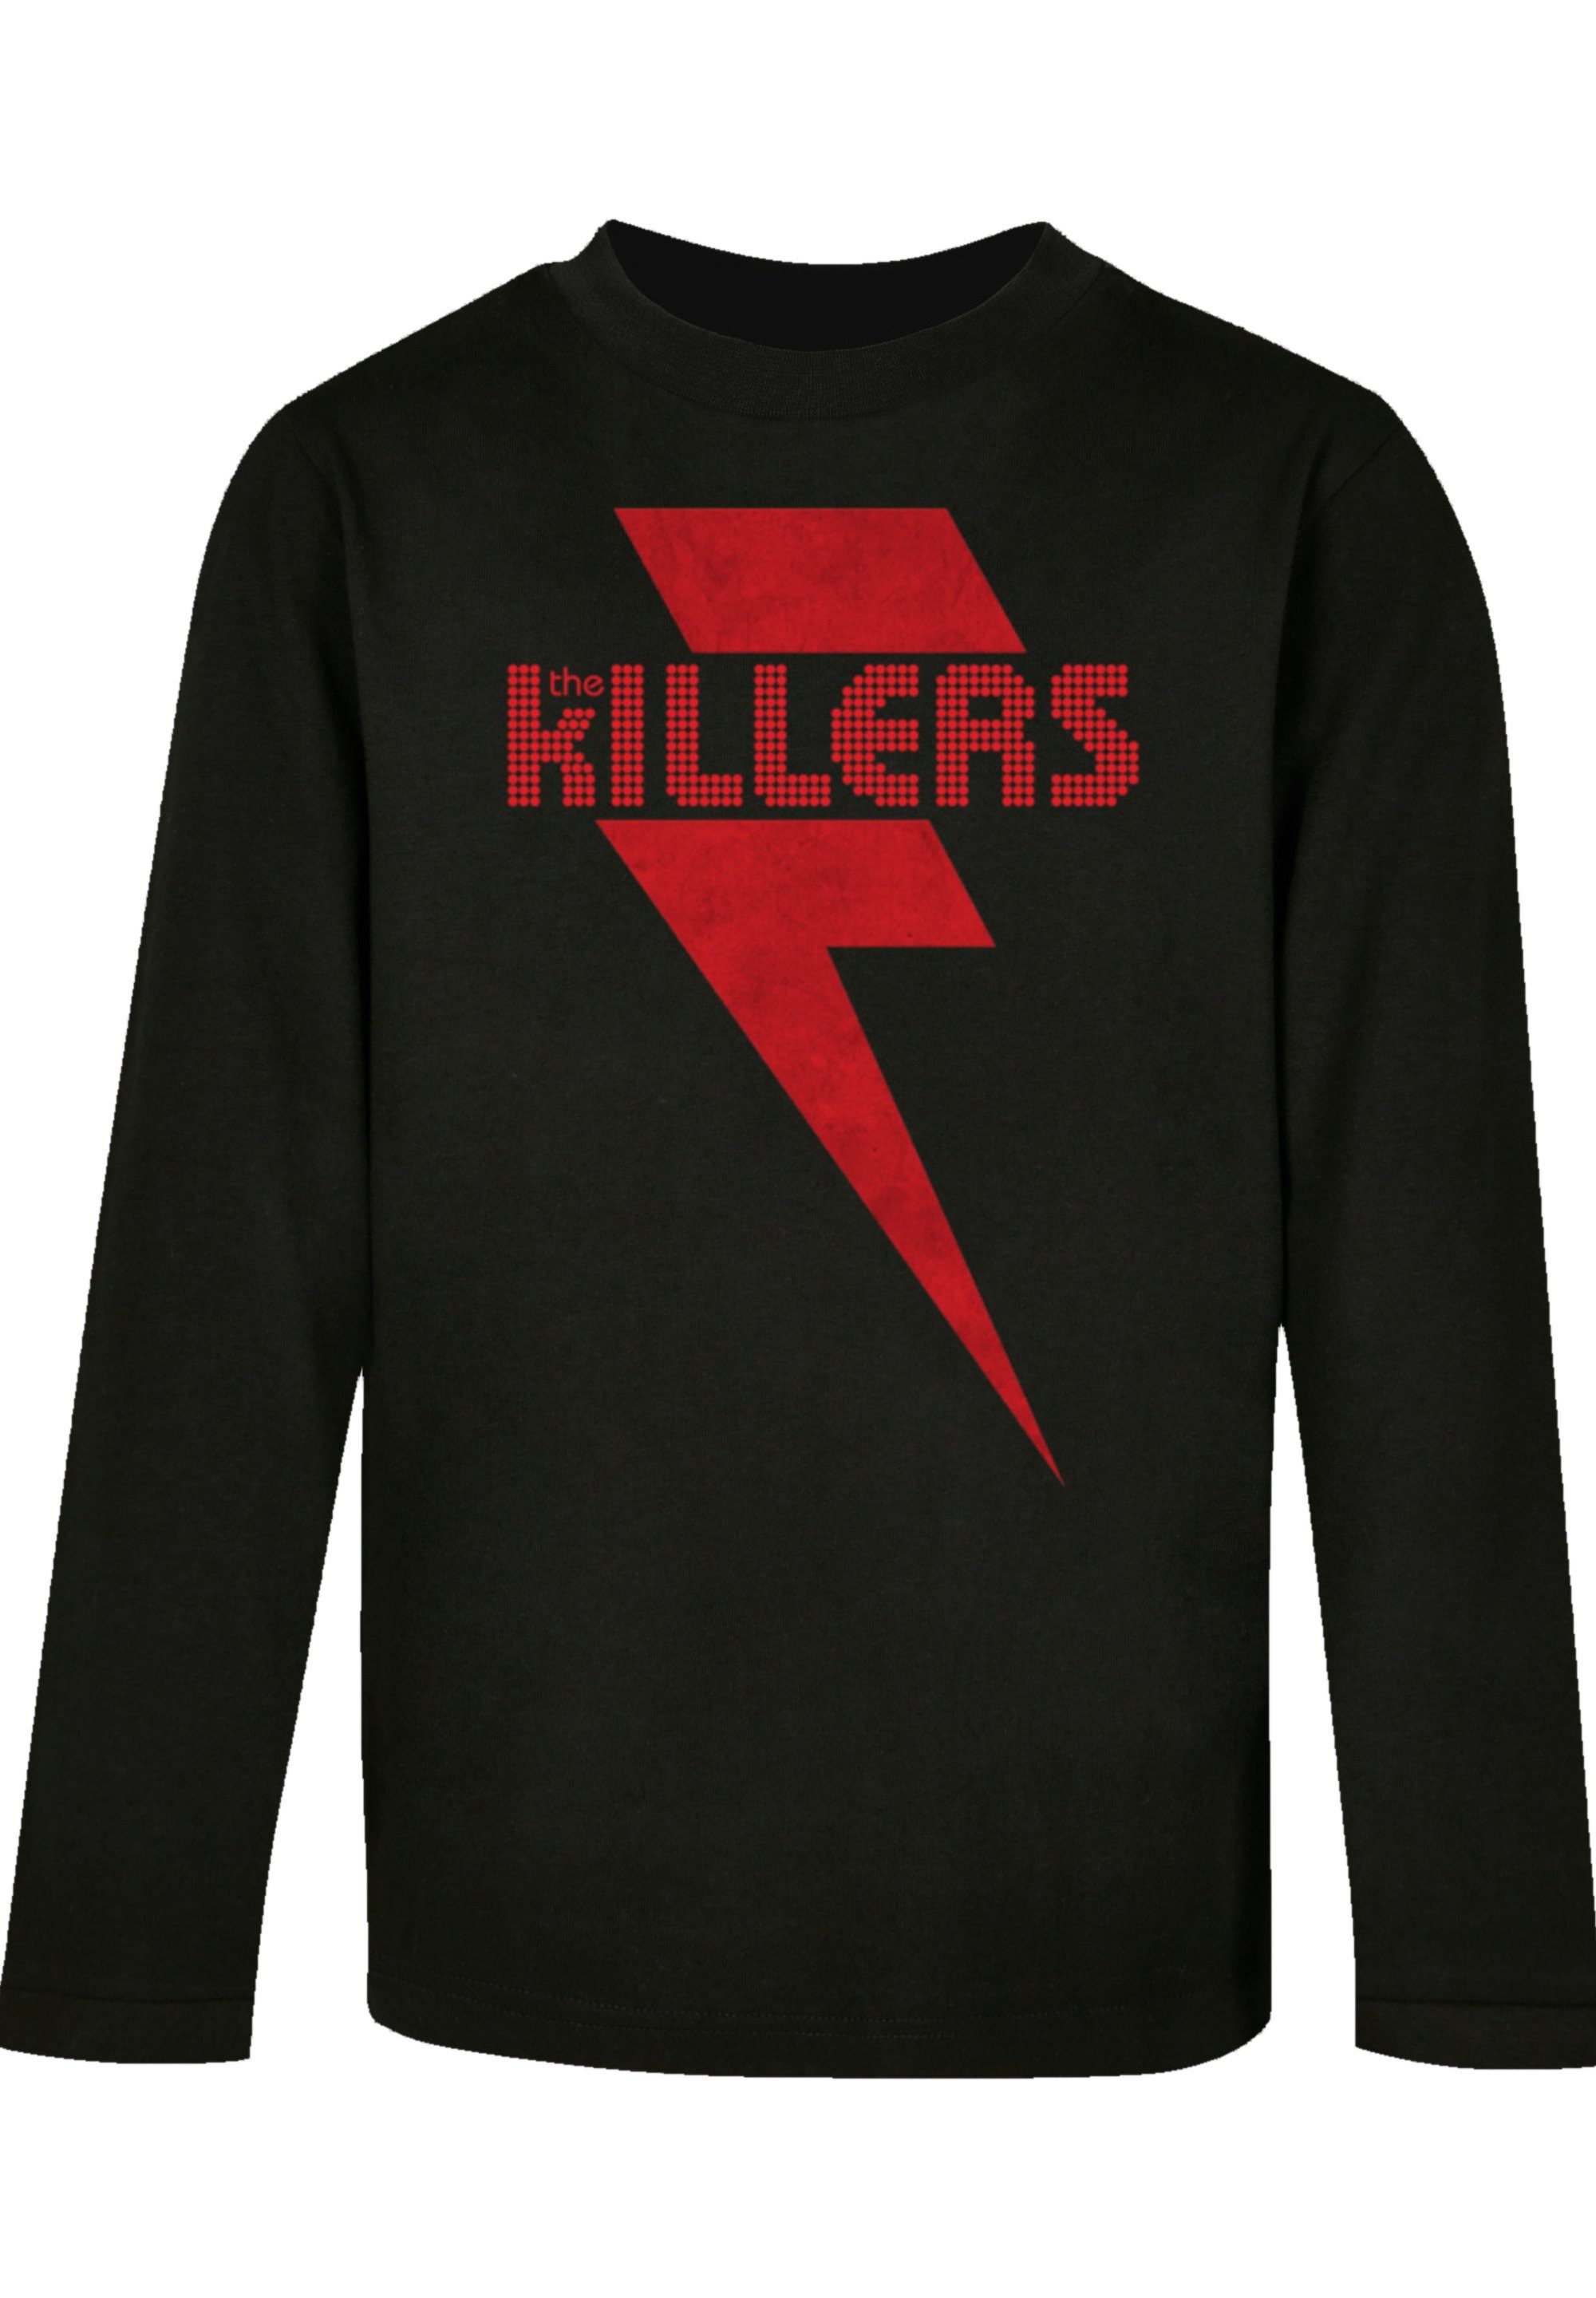 Killers Ärmelbündchen bequemen T-Shirt F4NT4STIC Schnitt Print, The mit Red Bolt Lockerer